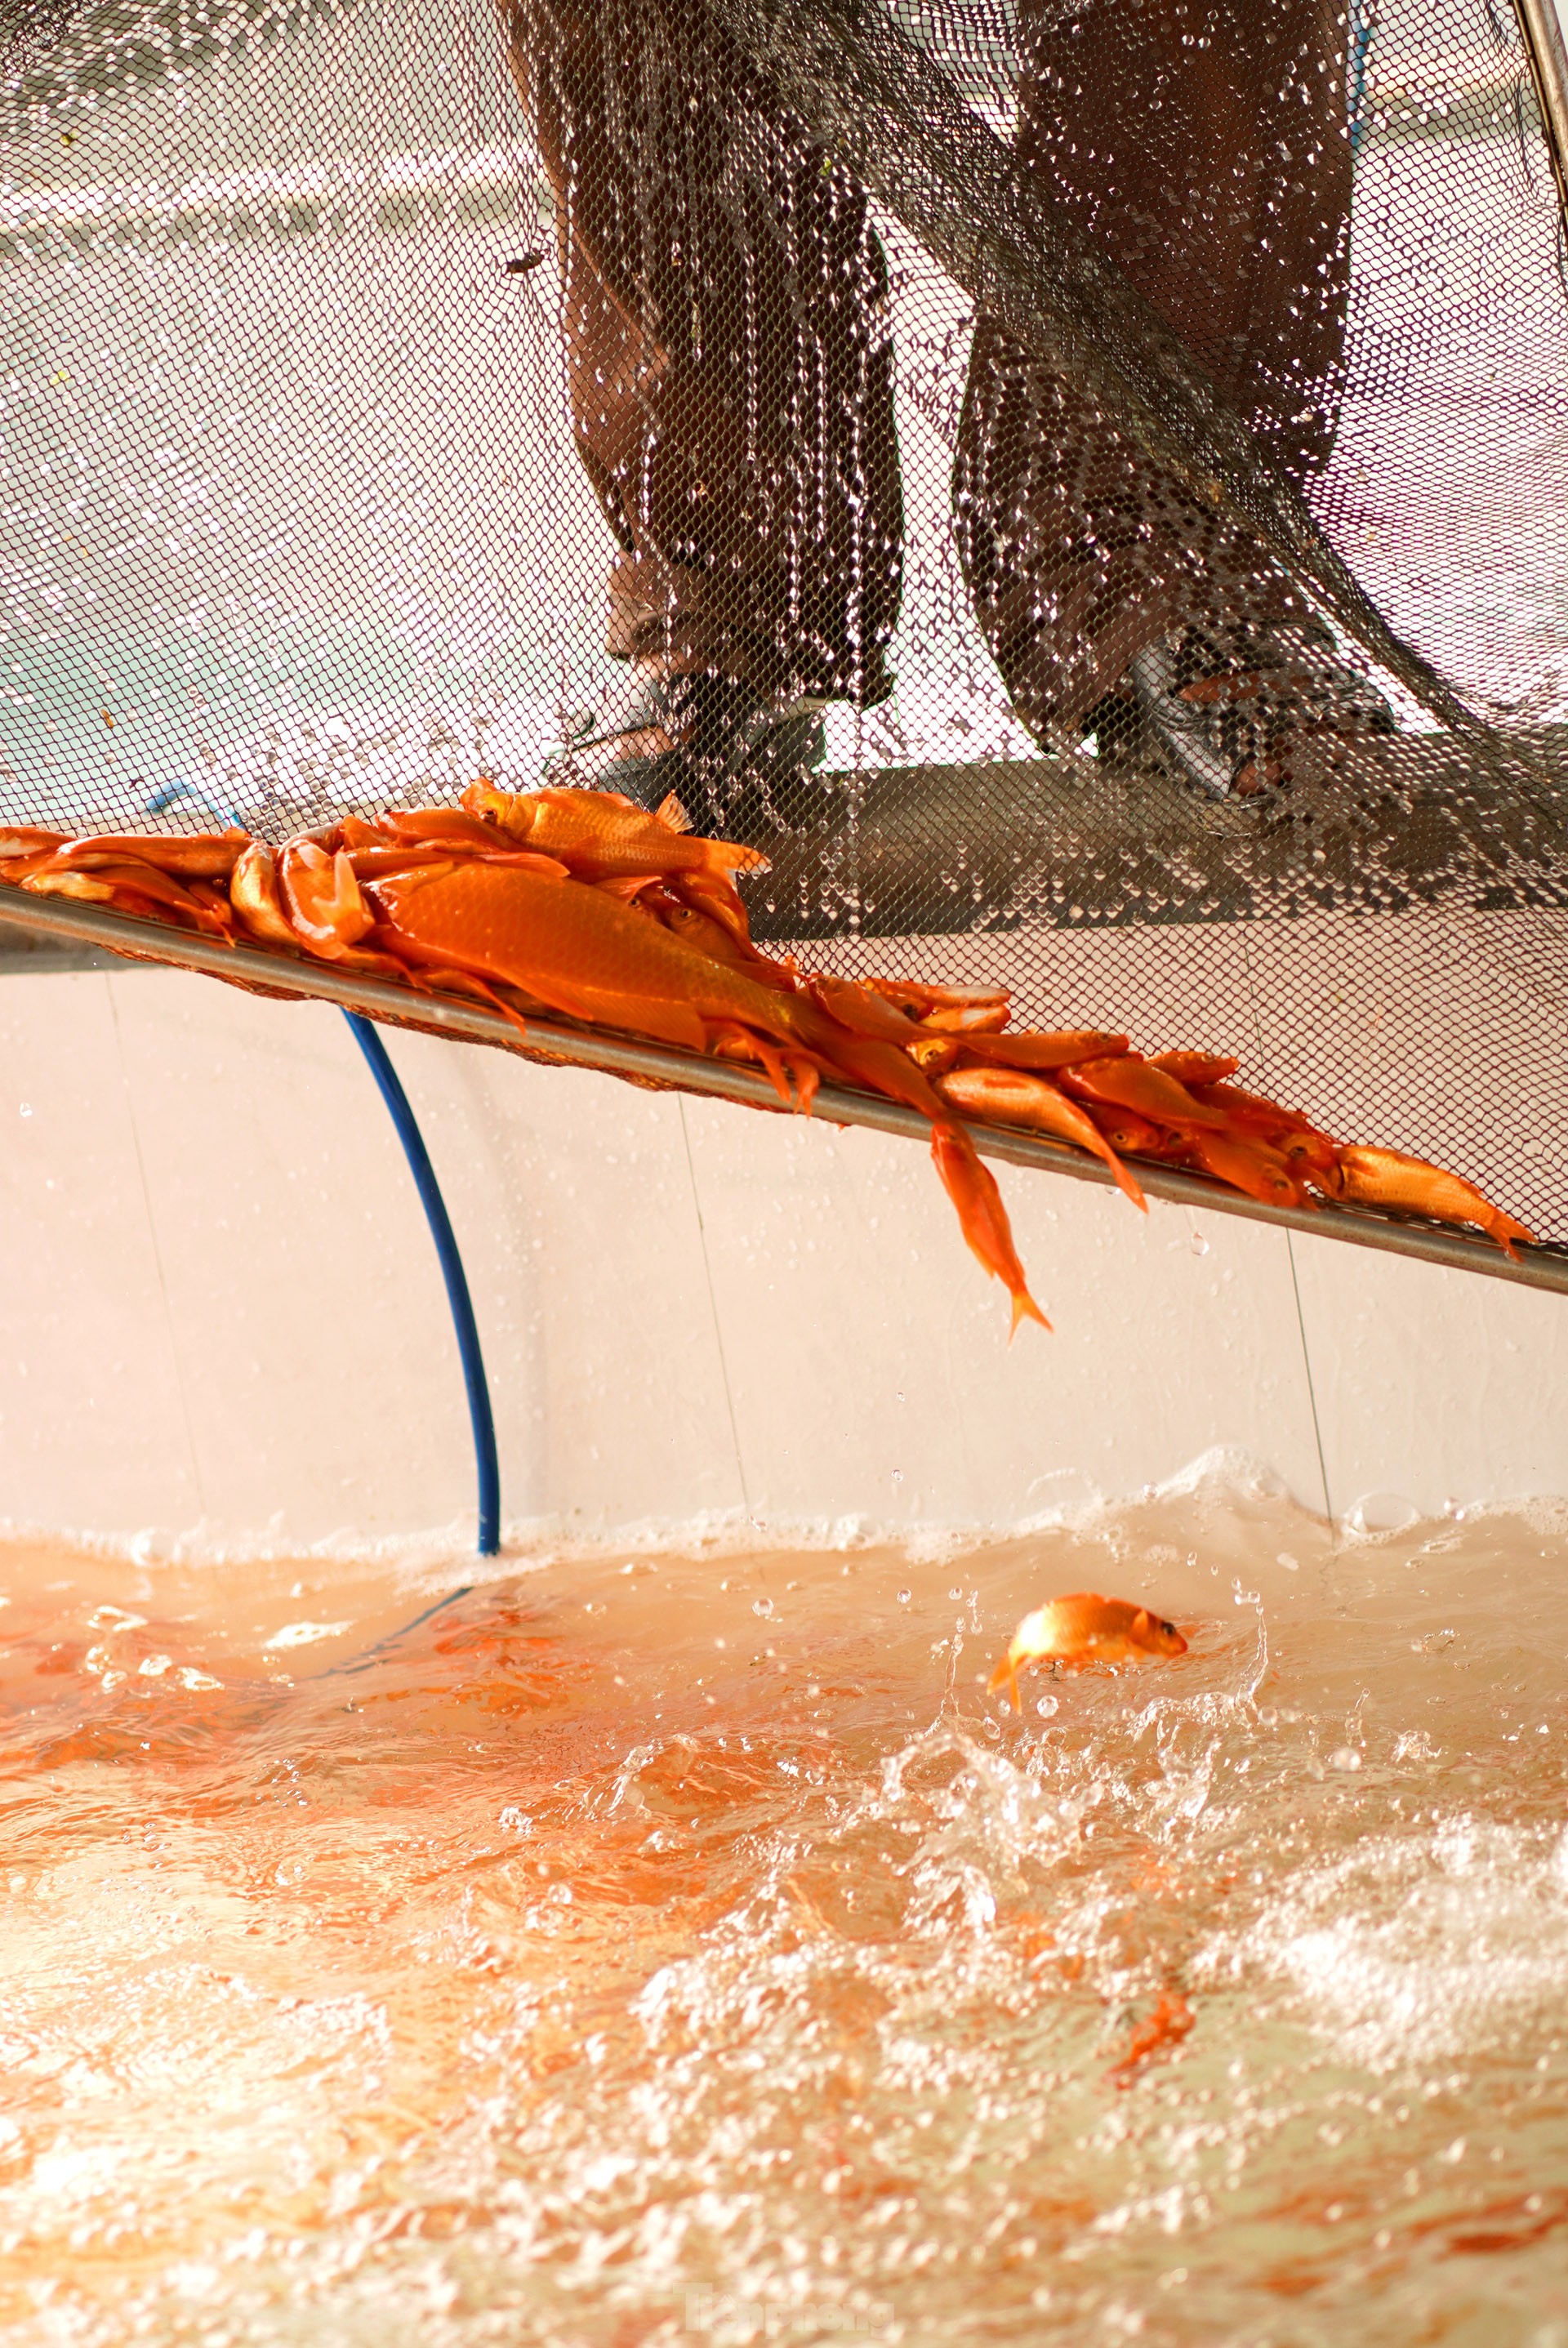 Làng cá chép đỏ nổi tiếng Phú Thọ rộn ràng dịp ông Công ông Táo - Ảnh 10.